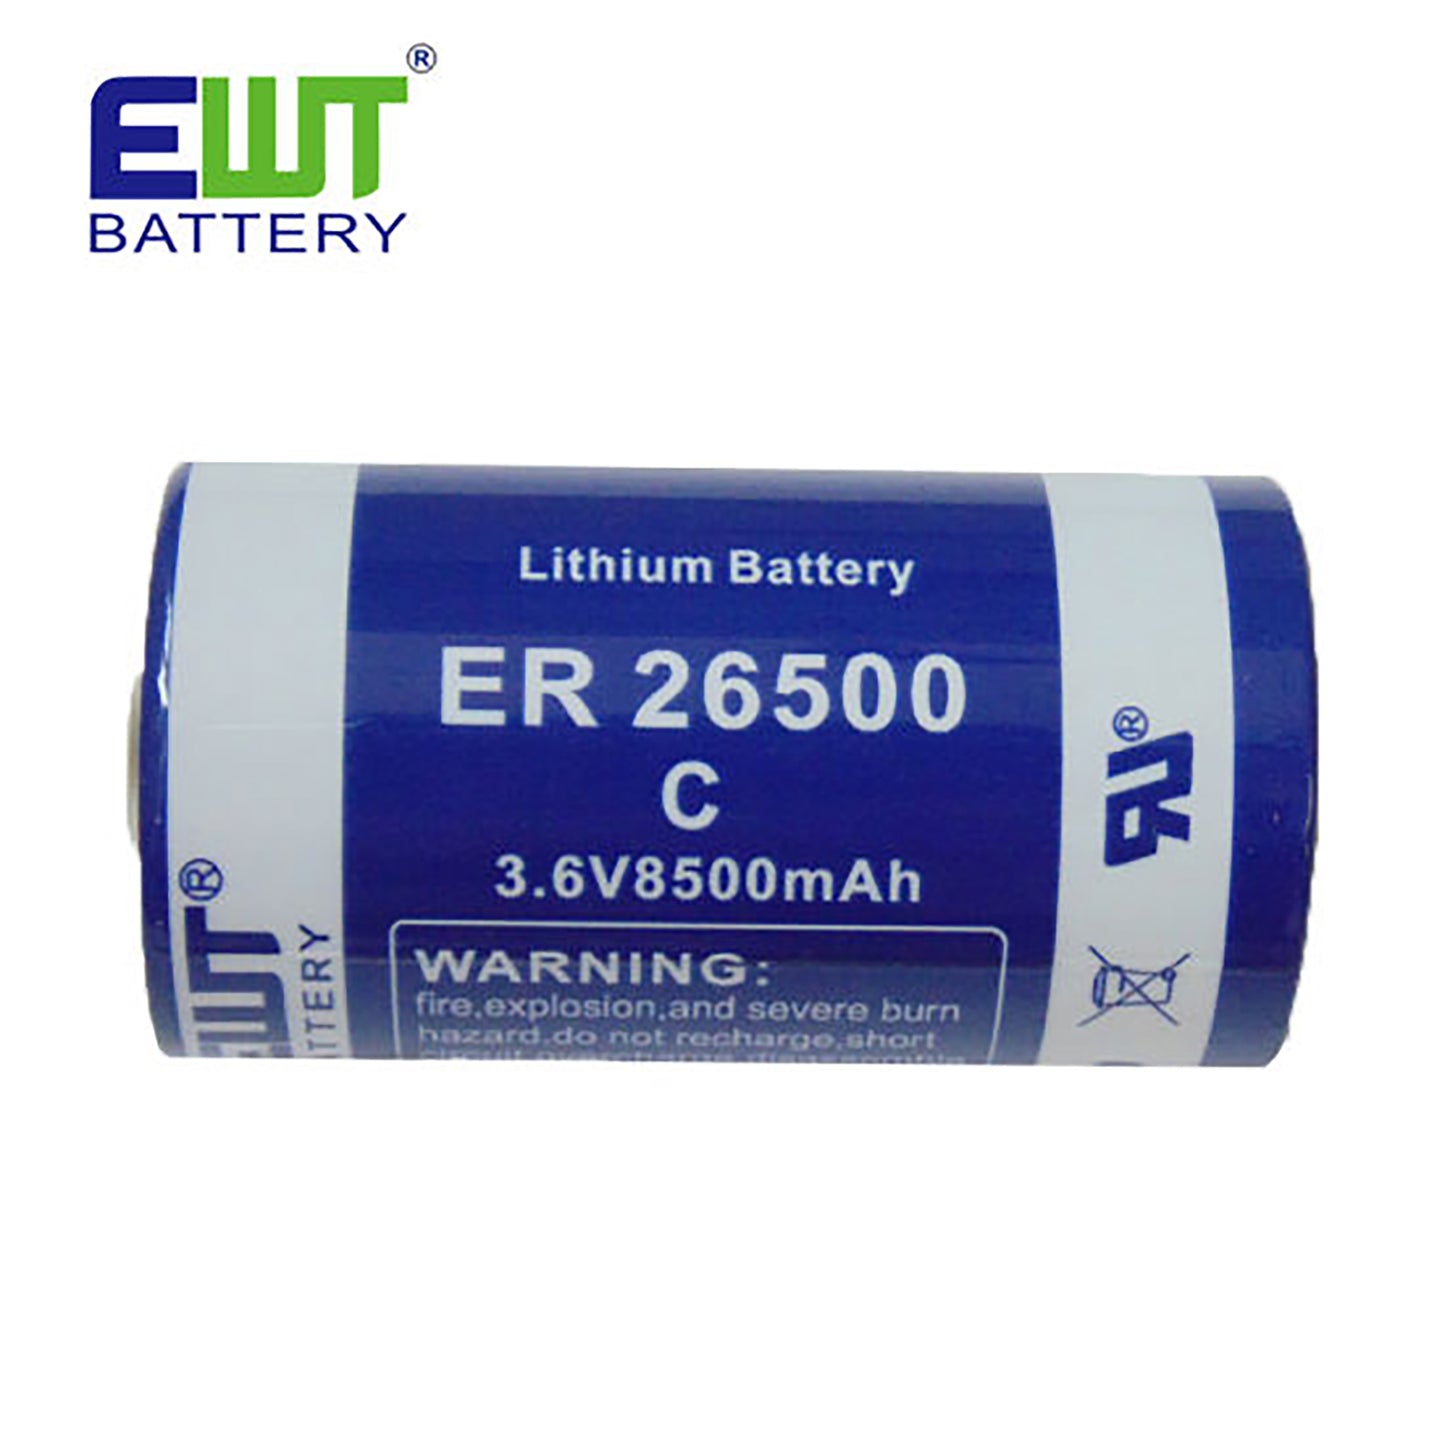 EWT-ER26500-C-1 - литиевая батарейка EWT ER26500, 3.6 В, 8 500 мА*ч